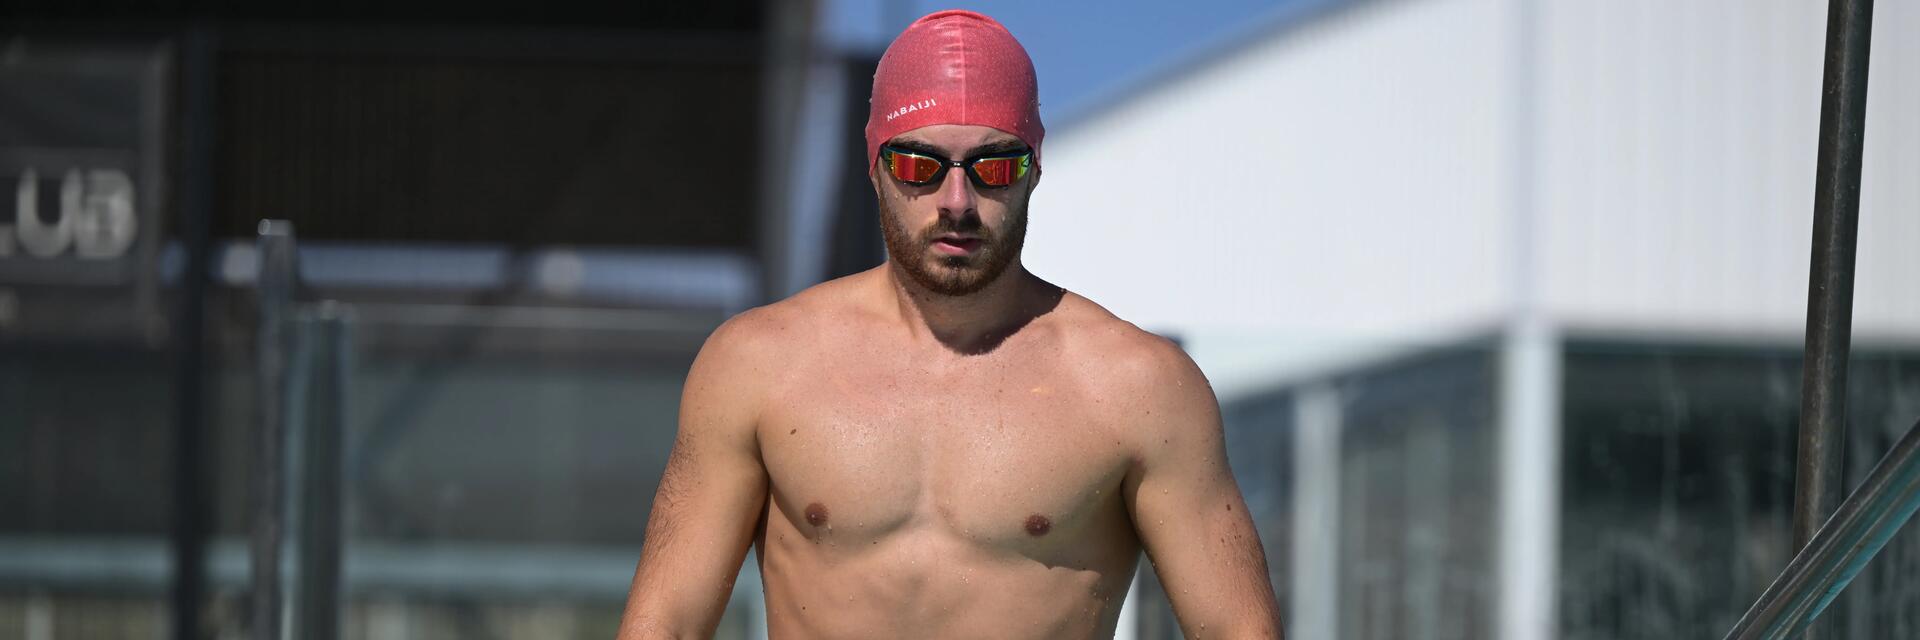 Mężczyzna stosujący dietę pływaka wchodzący do basenu w czepku i okularach pływackich